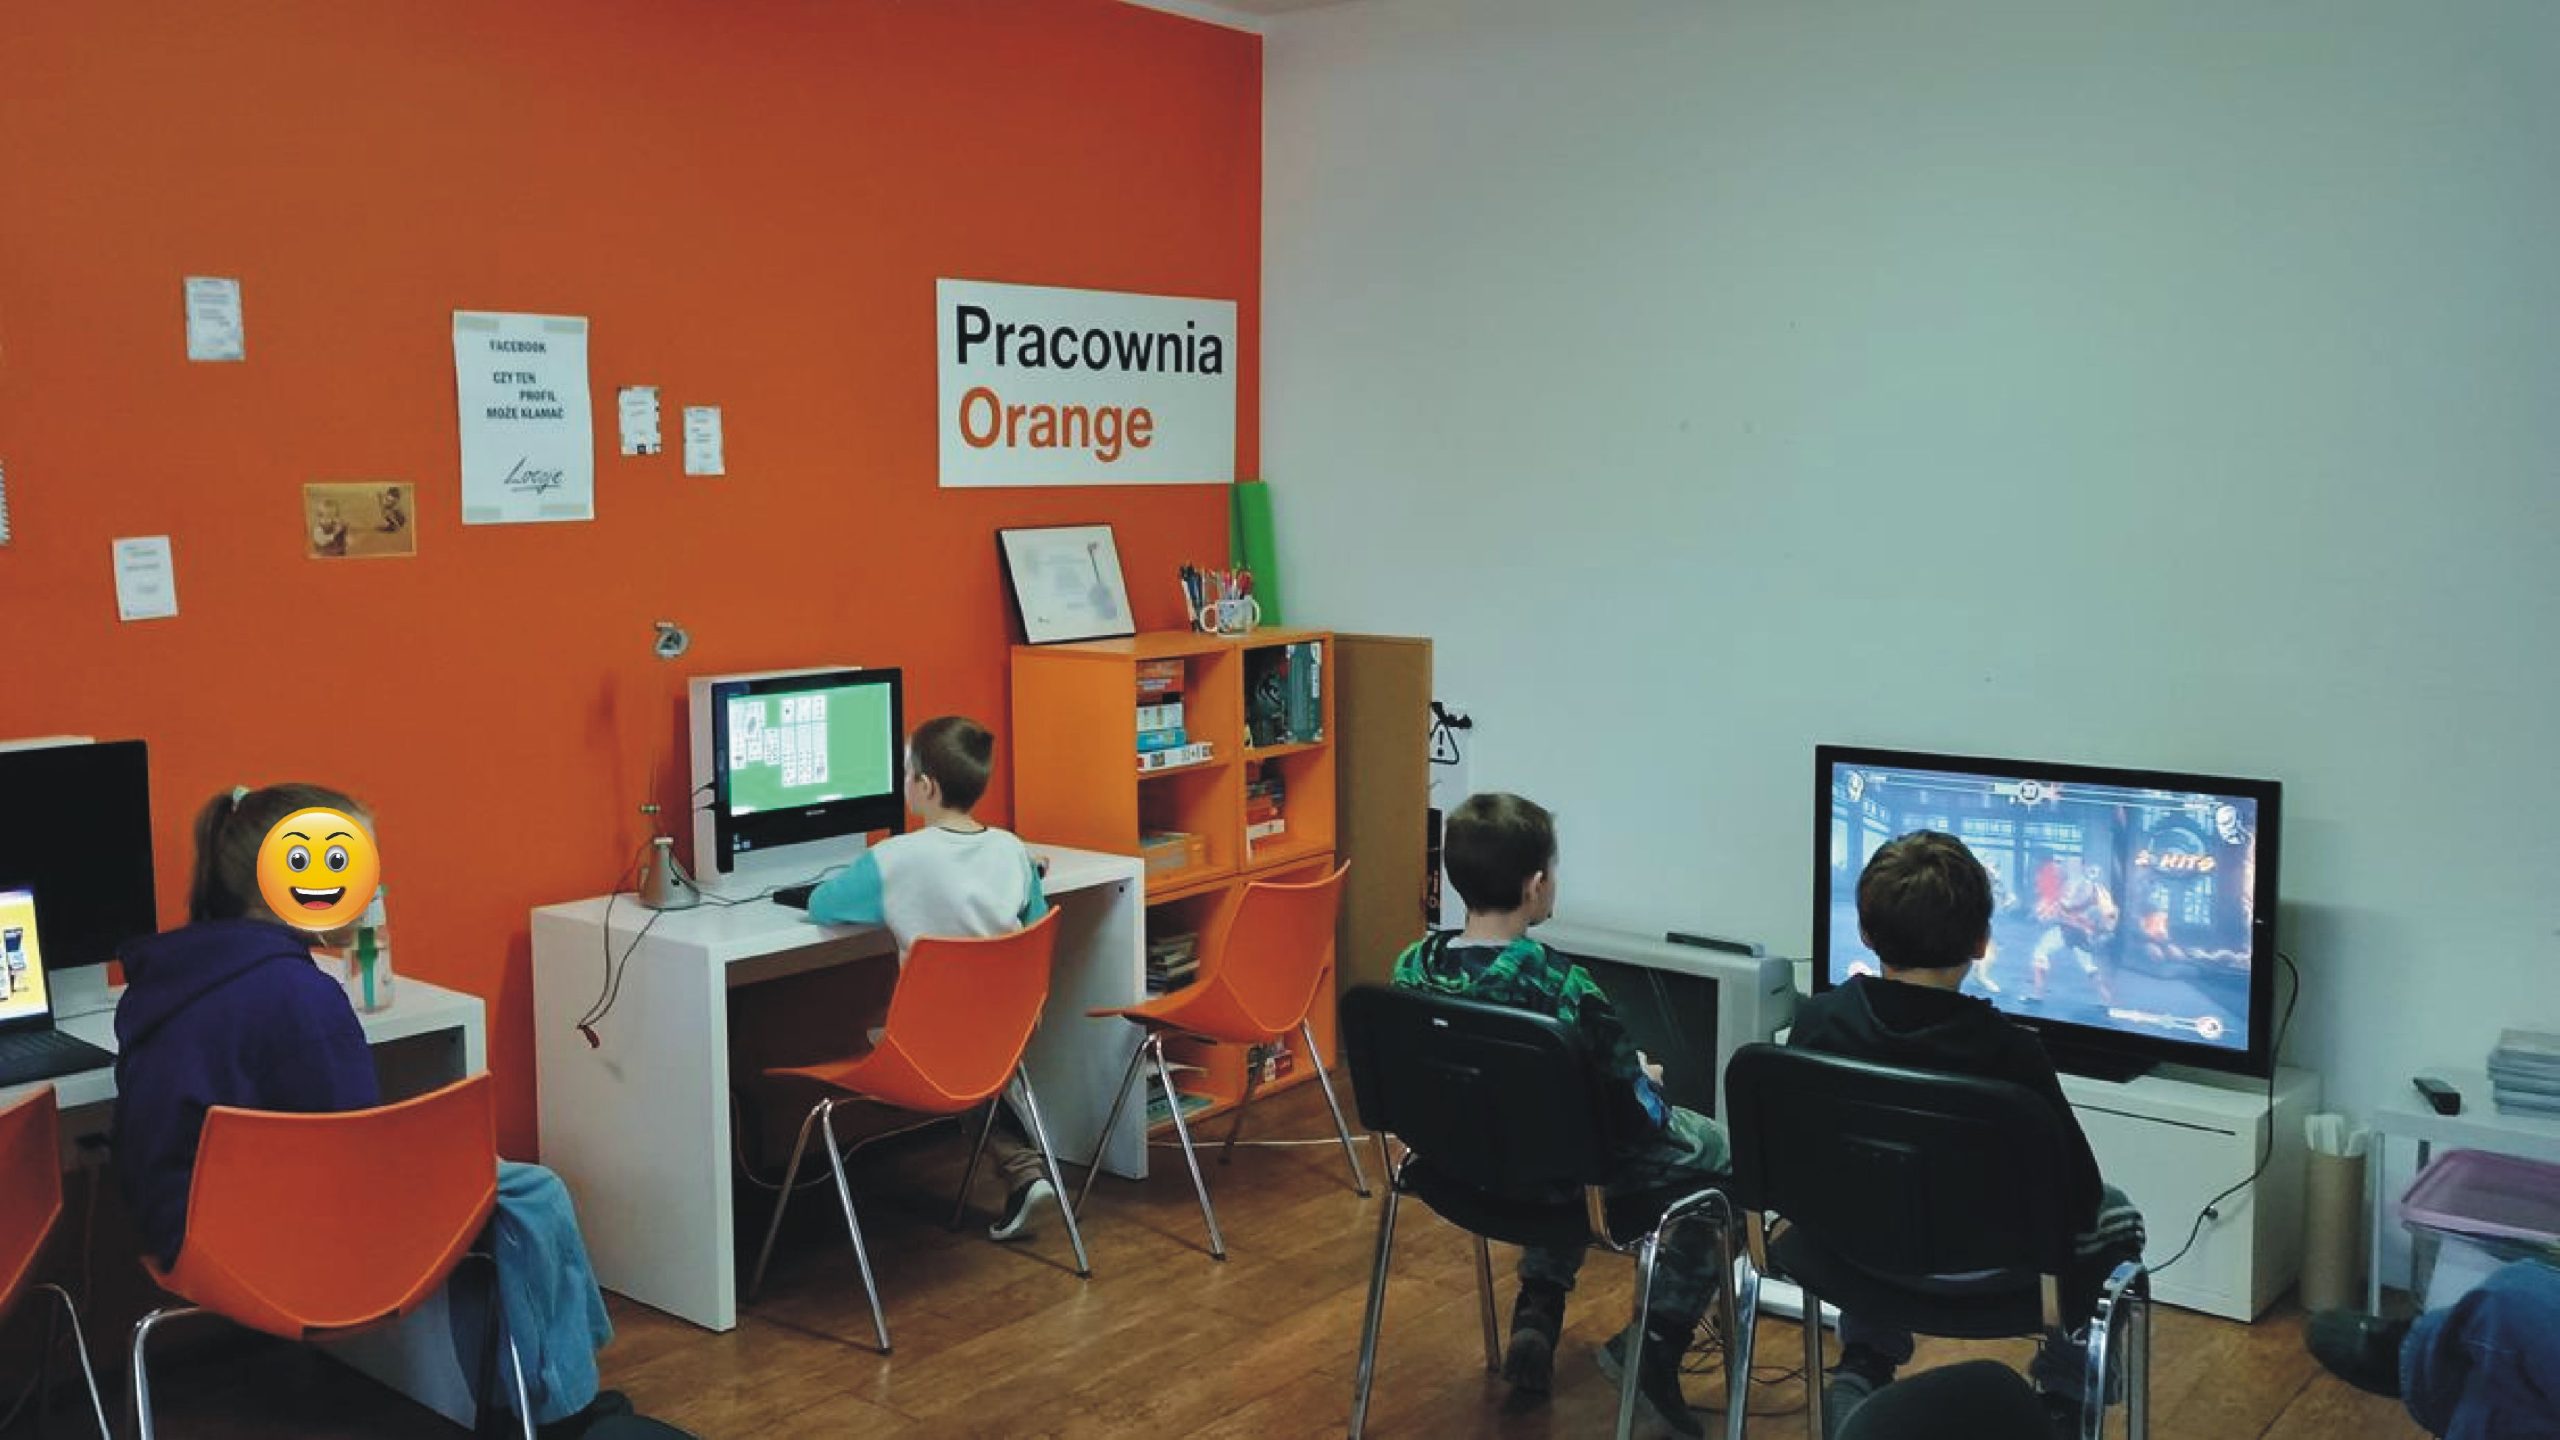 dzieci w pracowni orange grają na playstation, grają w pasjansa